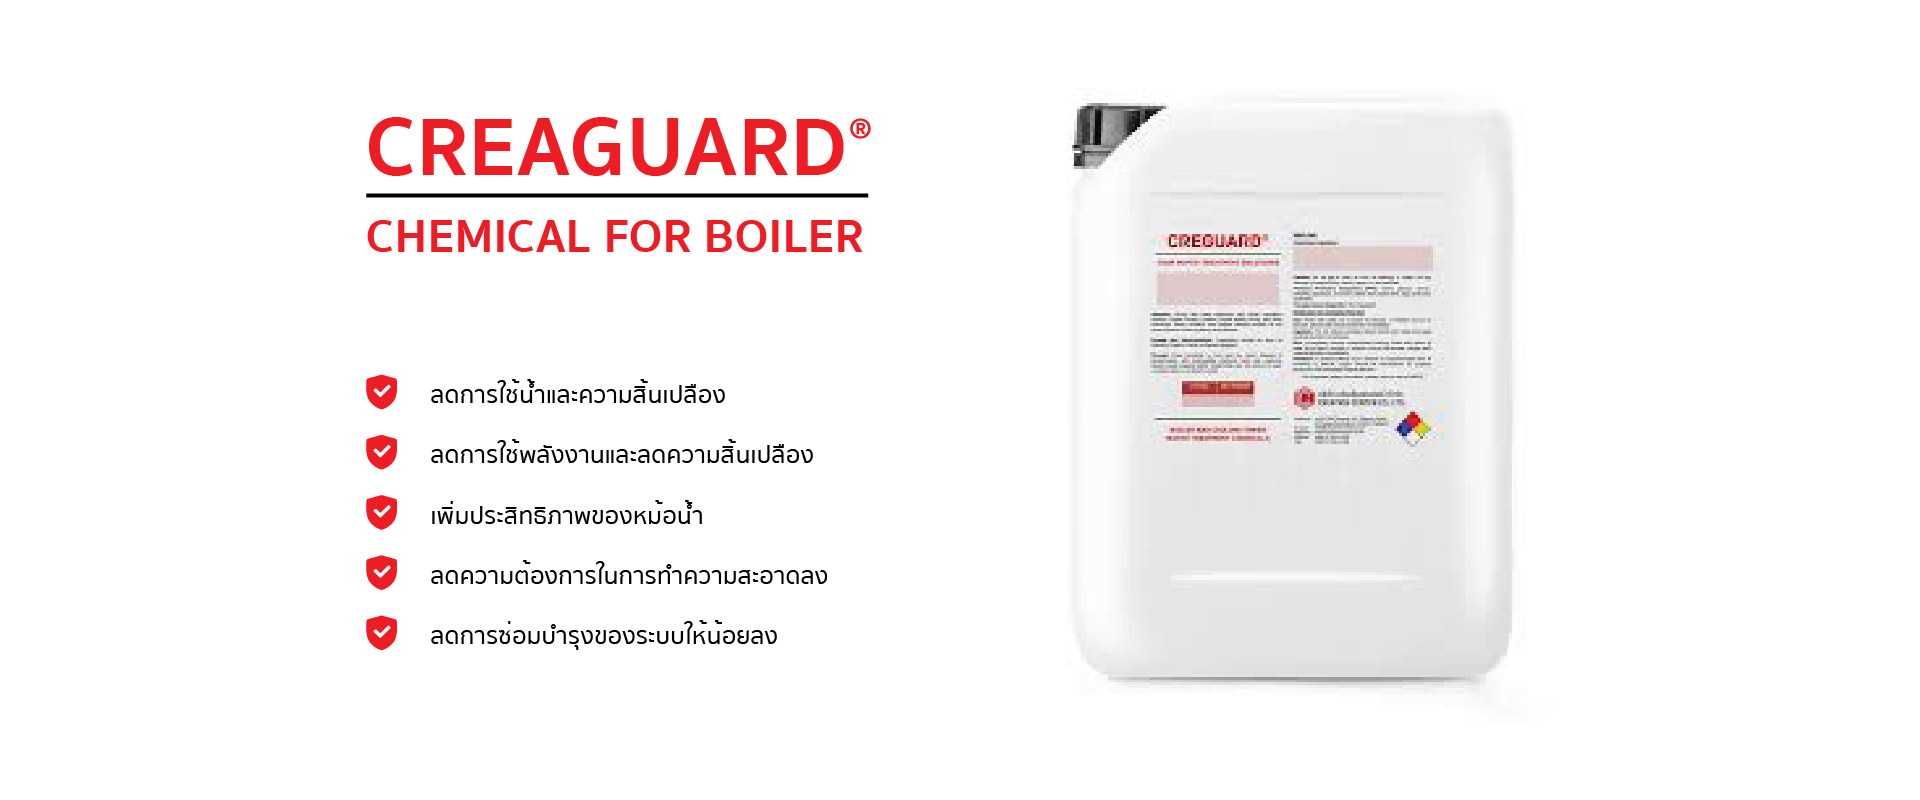 CREAGUARD สำหรับระบบ Boiler ปกป้องระบบน้ำของคุณให้ดีและมีคุณภาพมากยิ่งขึ้น